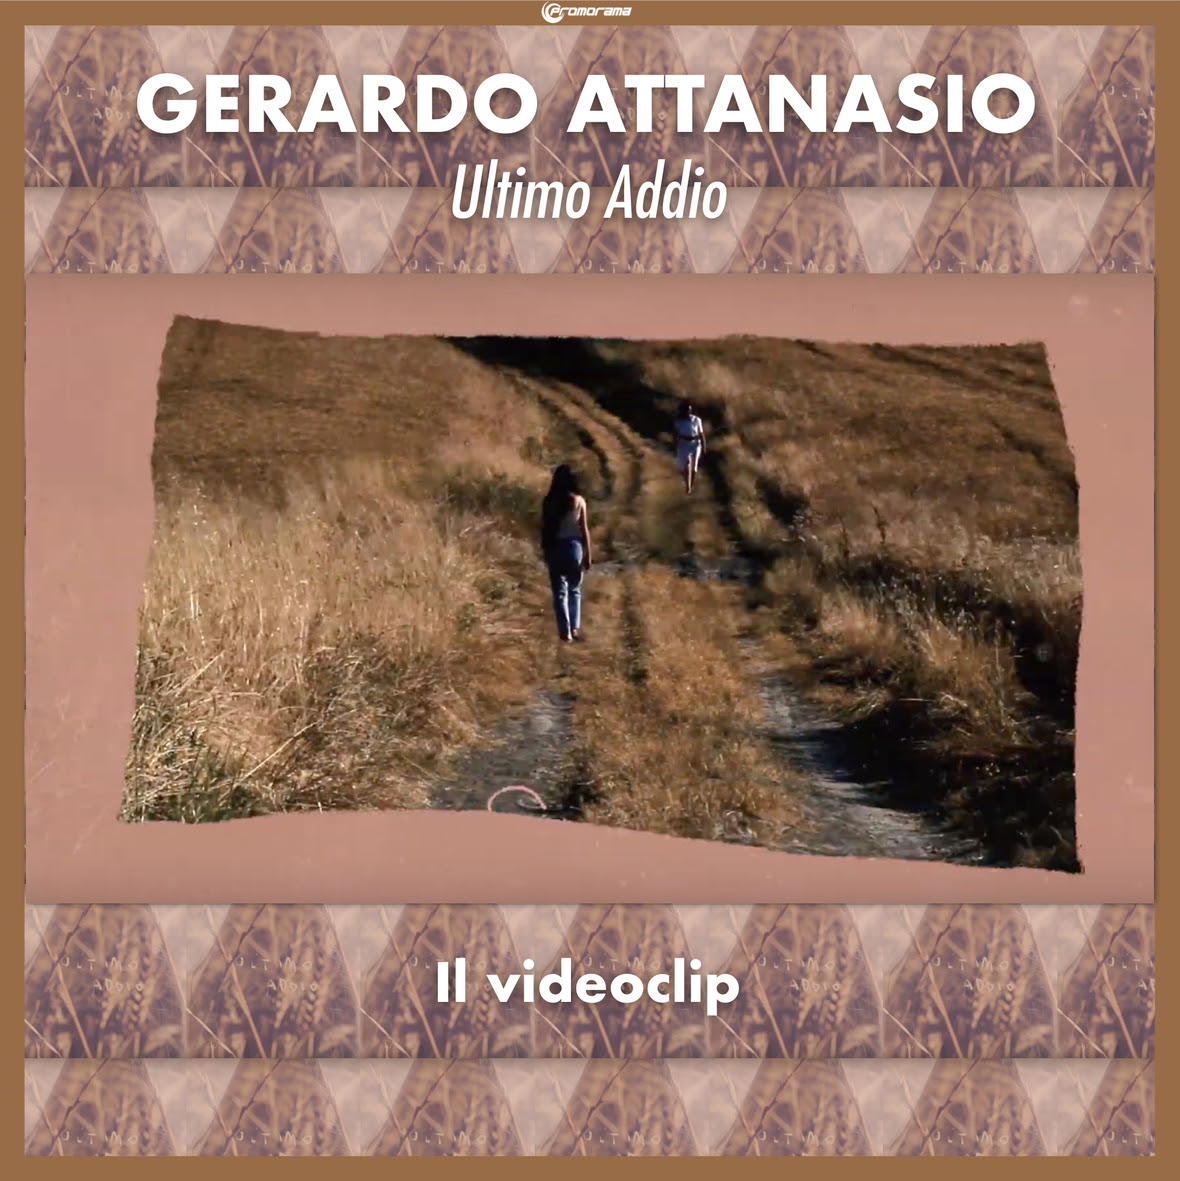 Gerrdo Attanasio - Ultimo Addio Videoclip